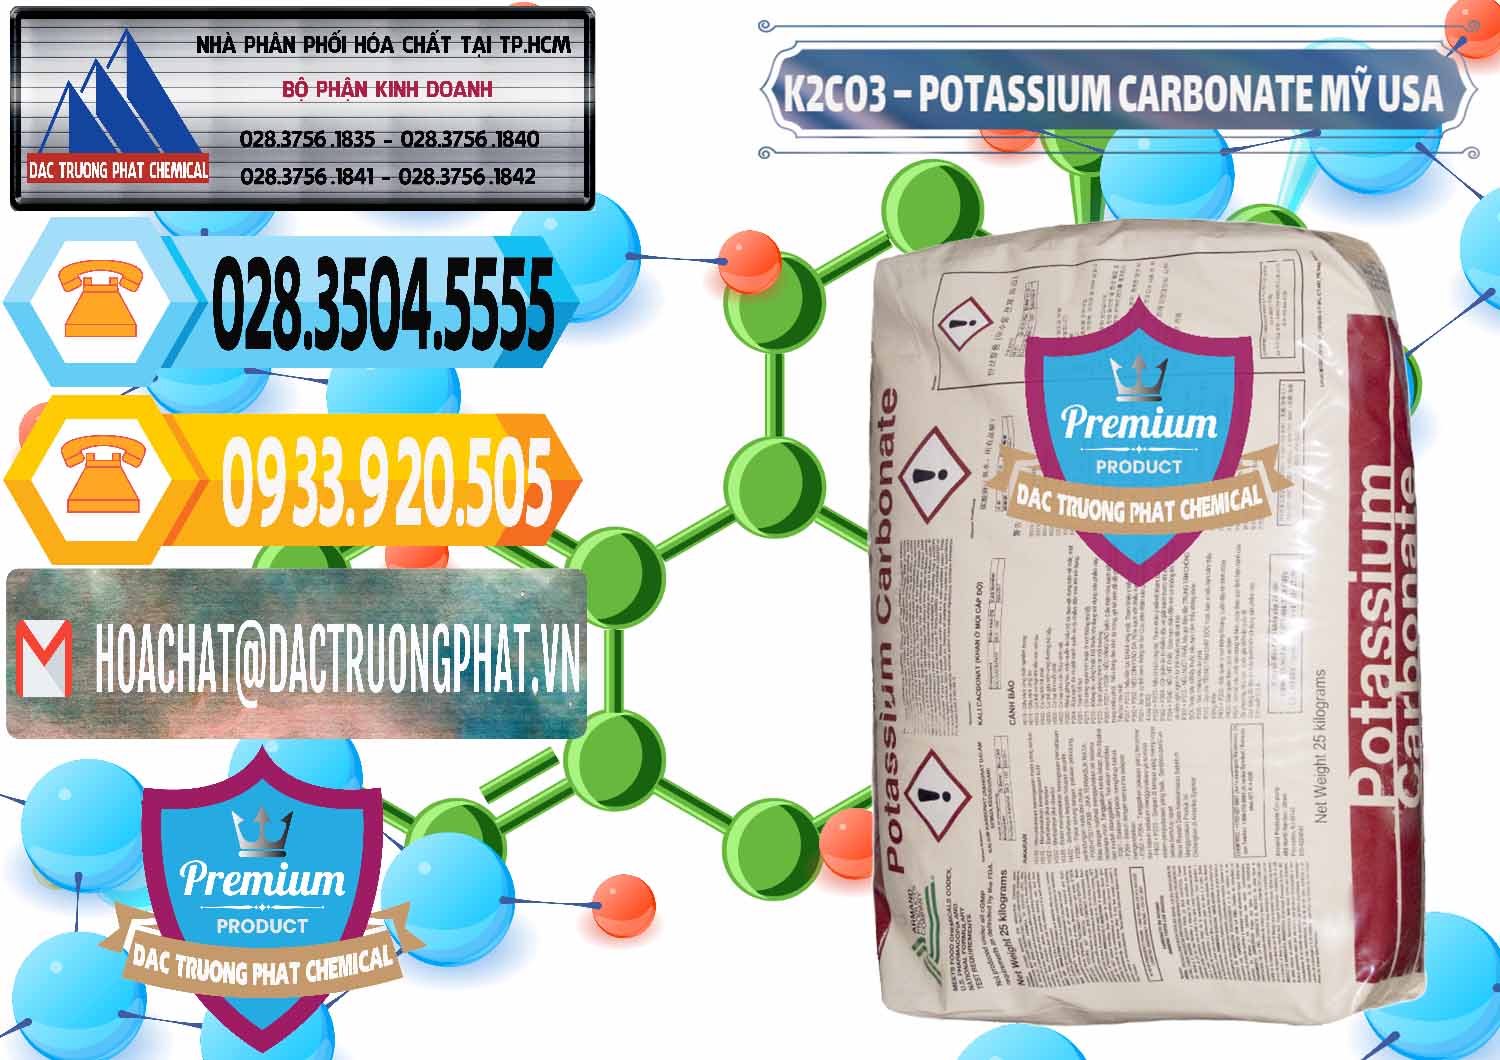 Đơn vị chuyên bán - cung cấp K2Co3 – Potassium Carbonate Mỹ USA - 0082 - Cty bán và phân phối hóa chất tại TP.HCM - hoachattayrua.net